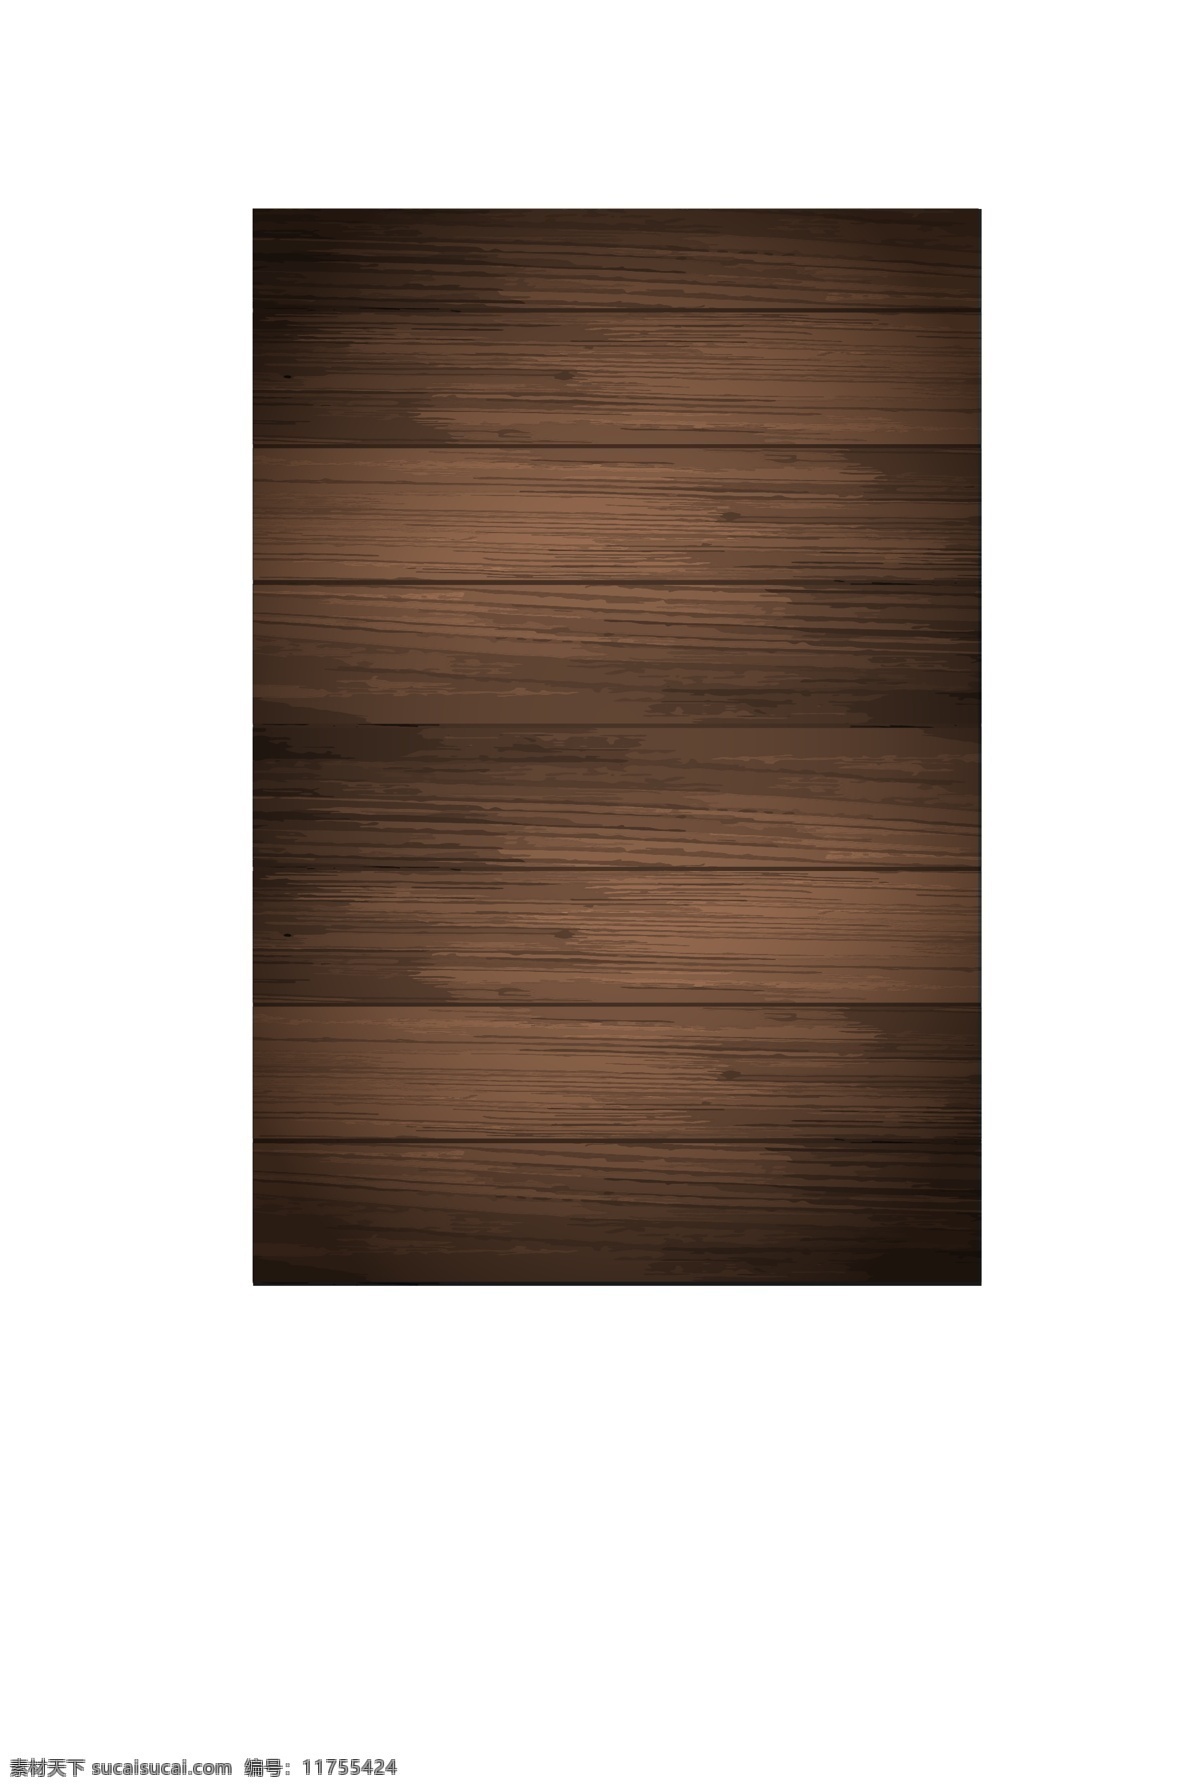 木纹背景 木板背景 木纹理背景 地板背景 条纹背景 木纹底纹 木纹图案背景